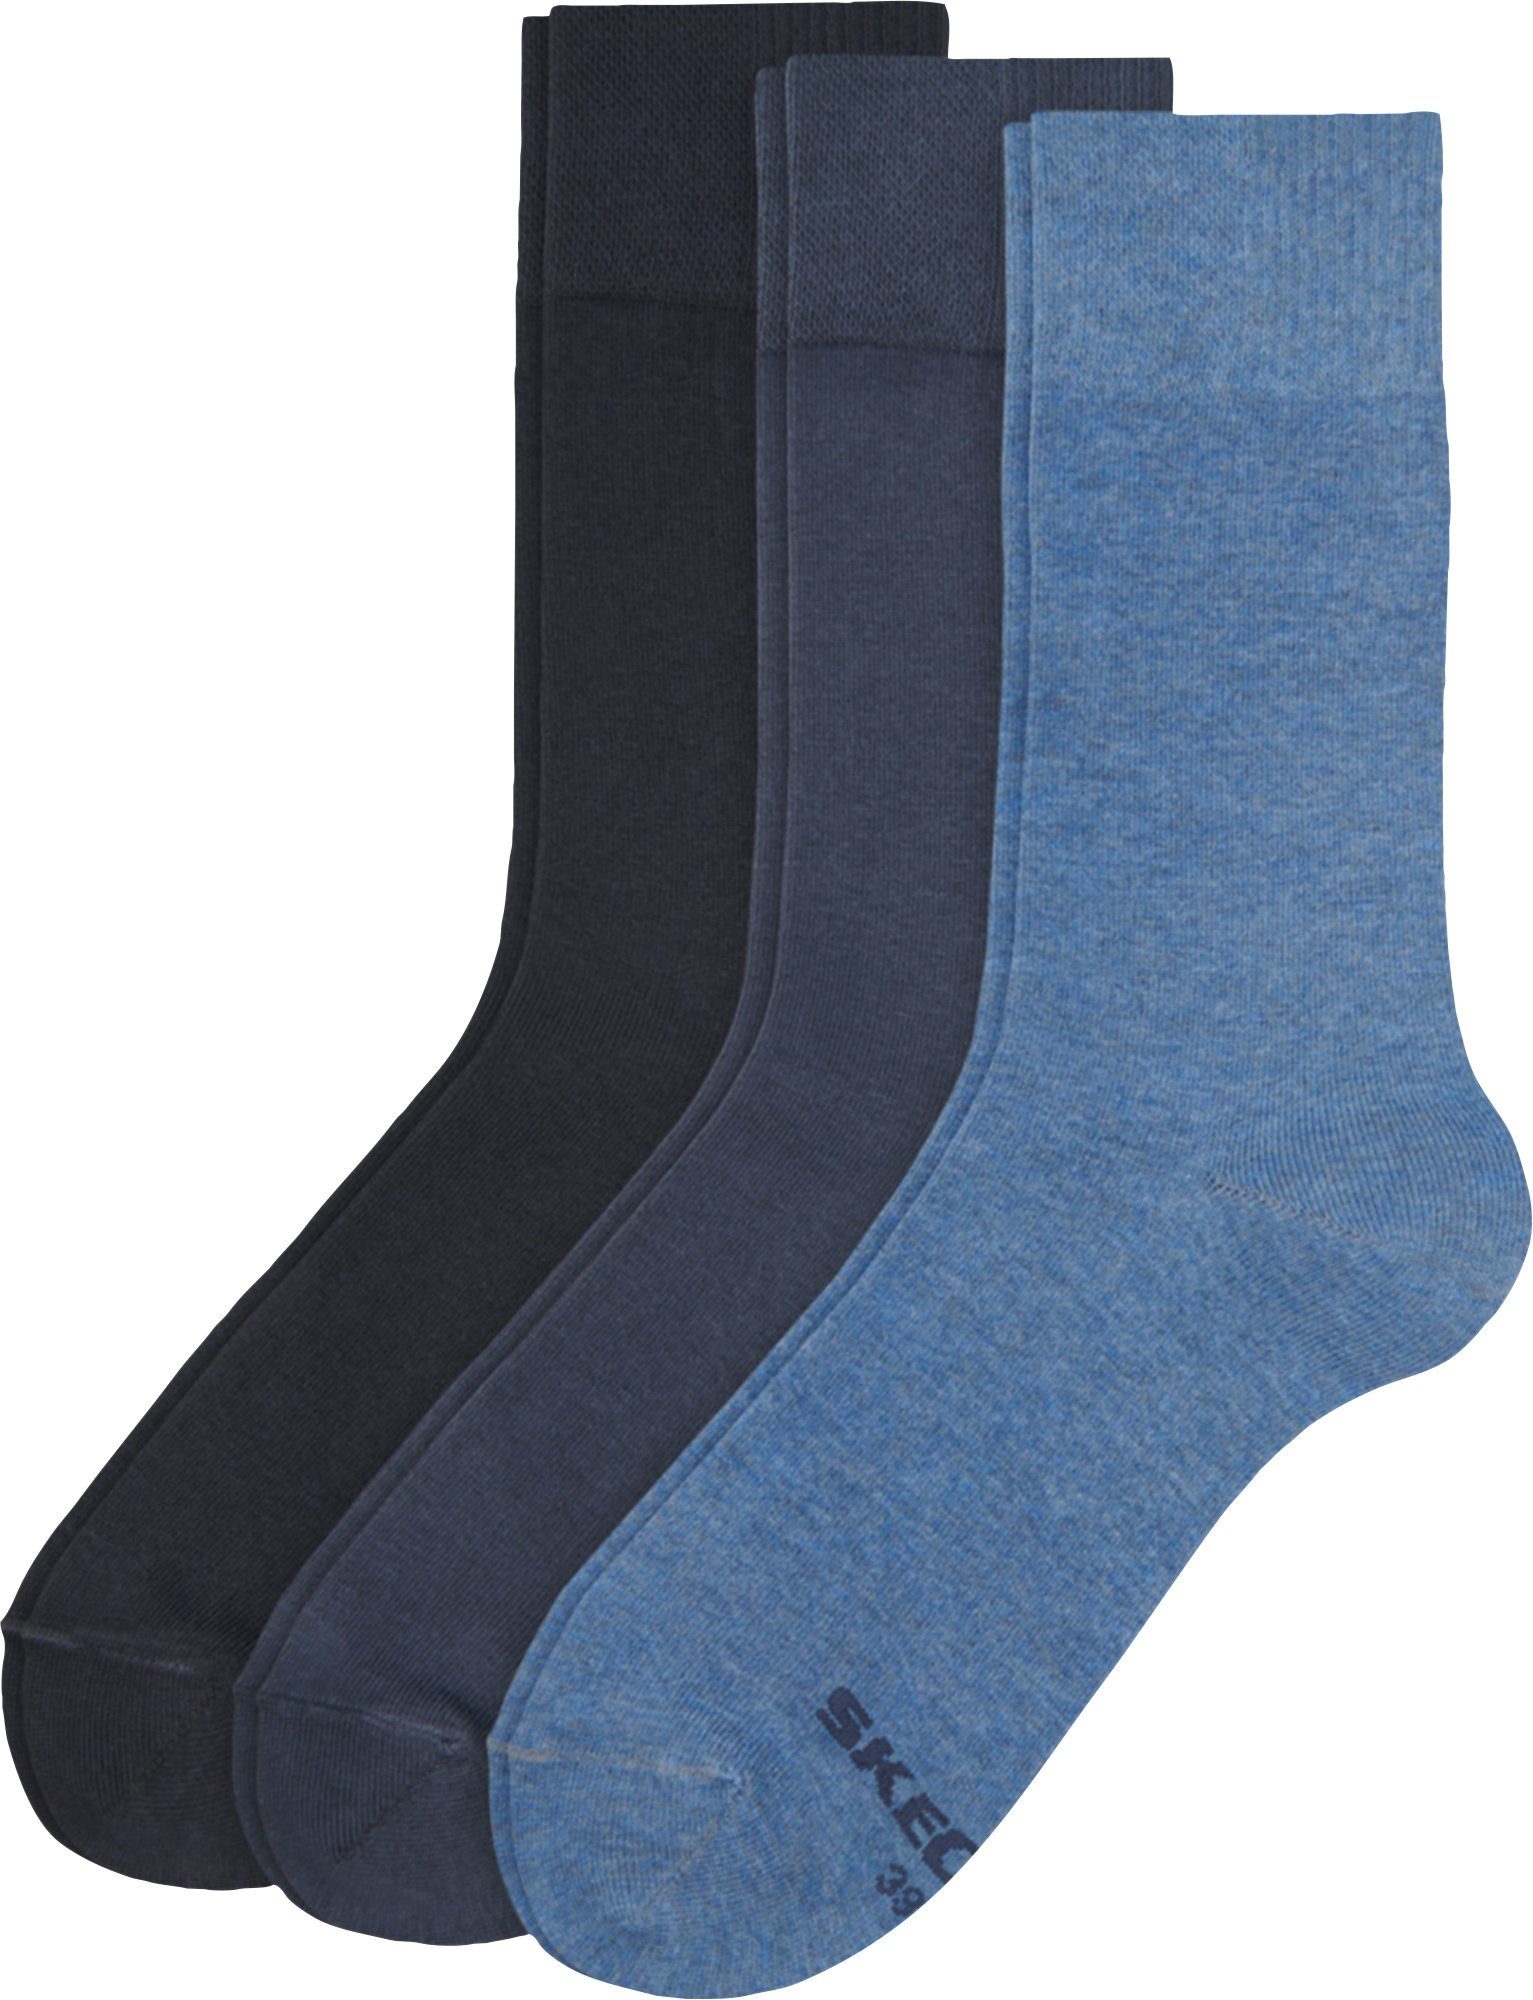 Uni Socken Skechers 3 blau Herren-Socken Paar